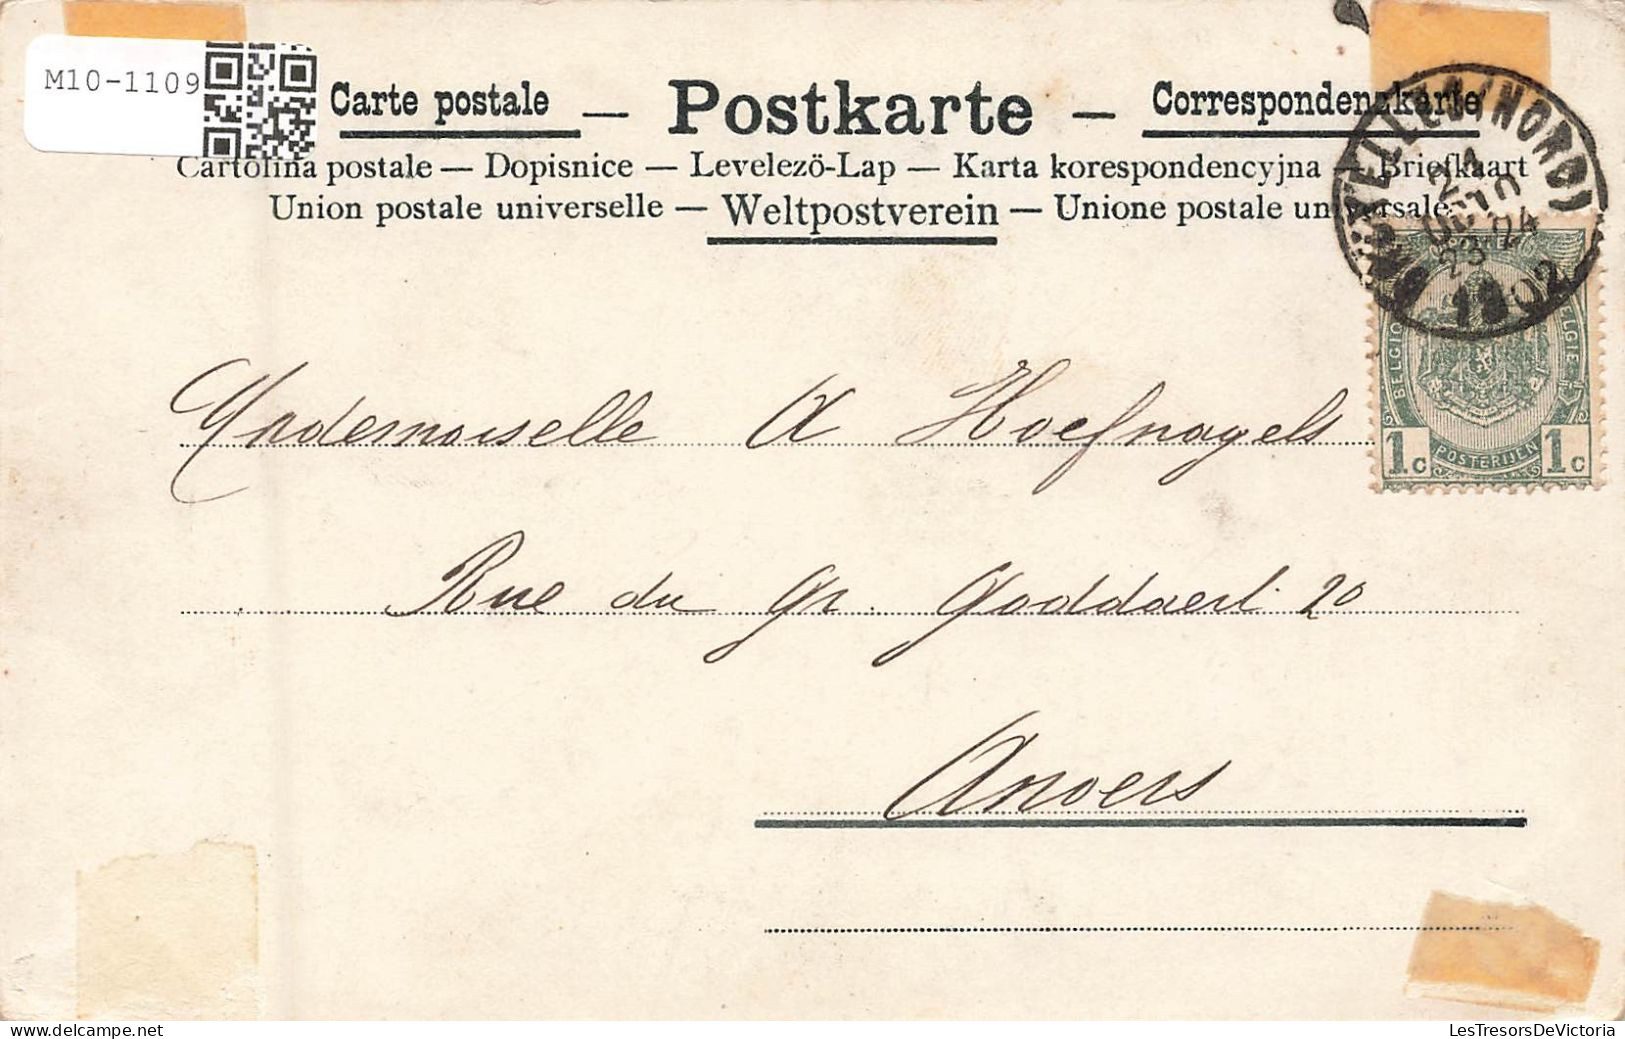 ILLUSTRATEURS - Non Signés - Colorisé - Animé - Carte Postale Ancienne - Antes 1900